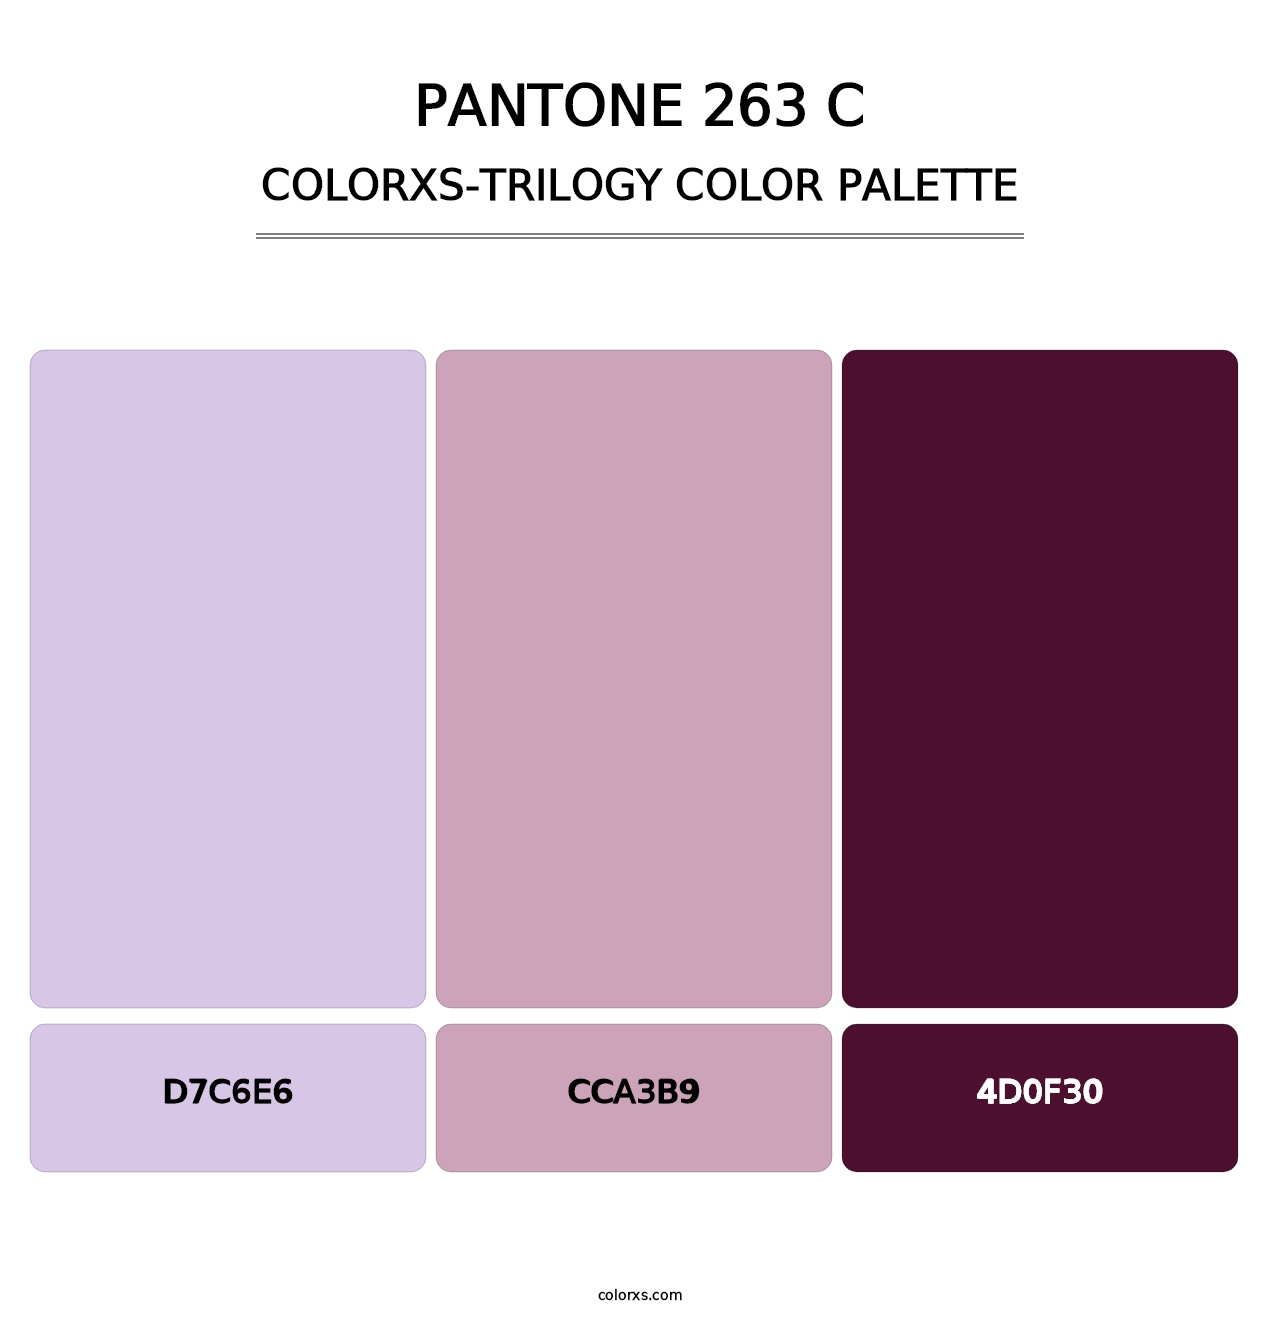 PANTONE 263 C - Colorxs Trilogy Palette